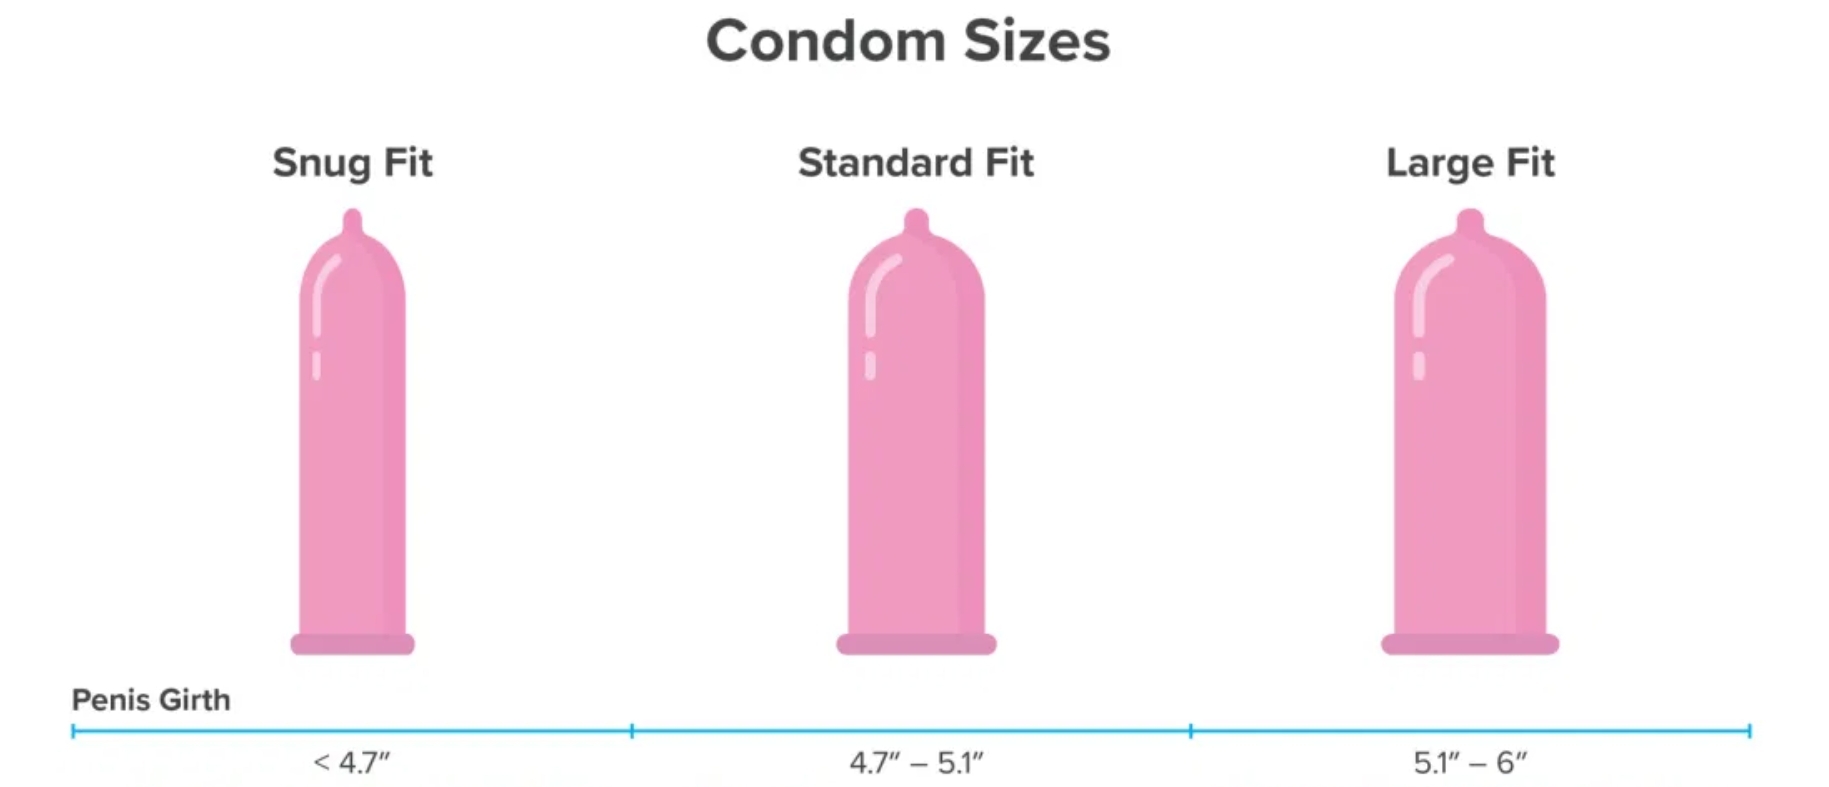 fit size condoms